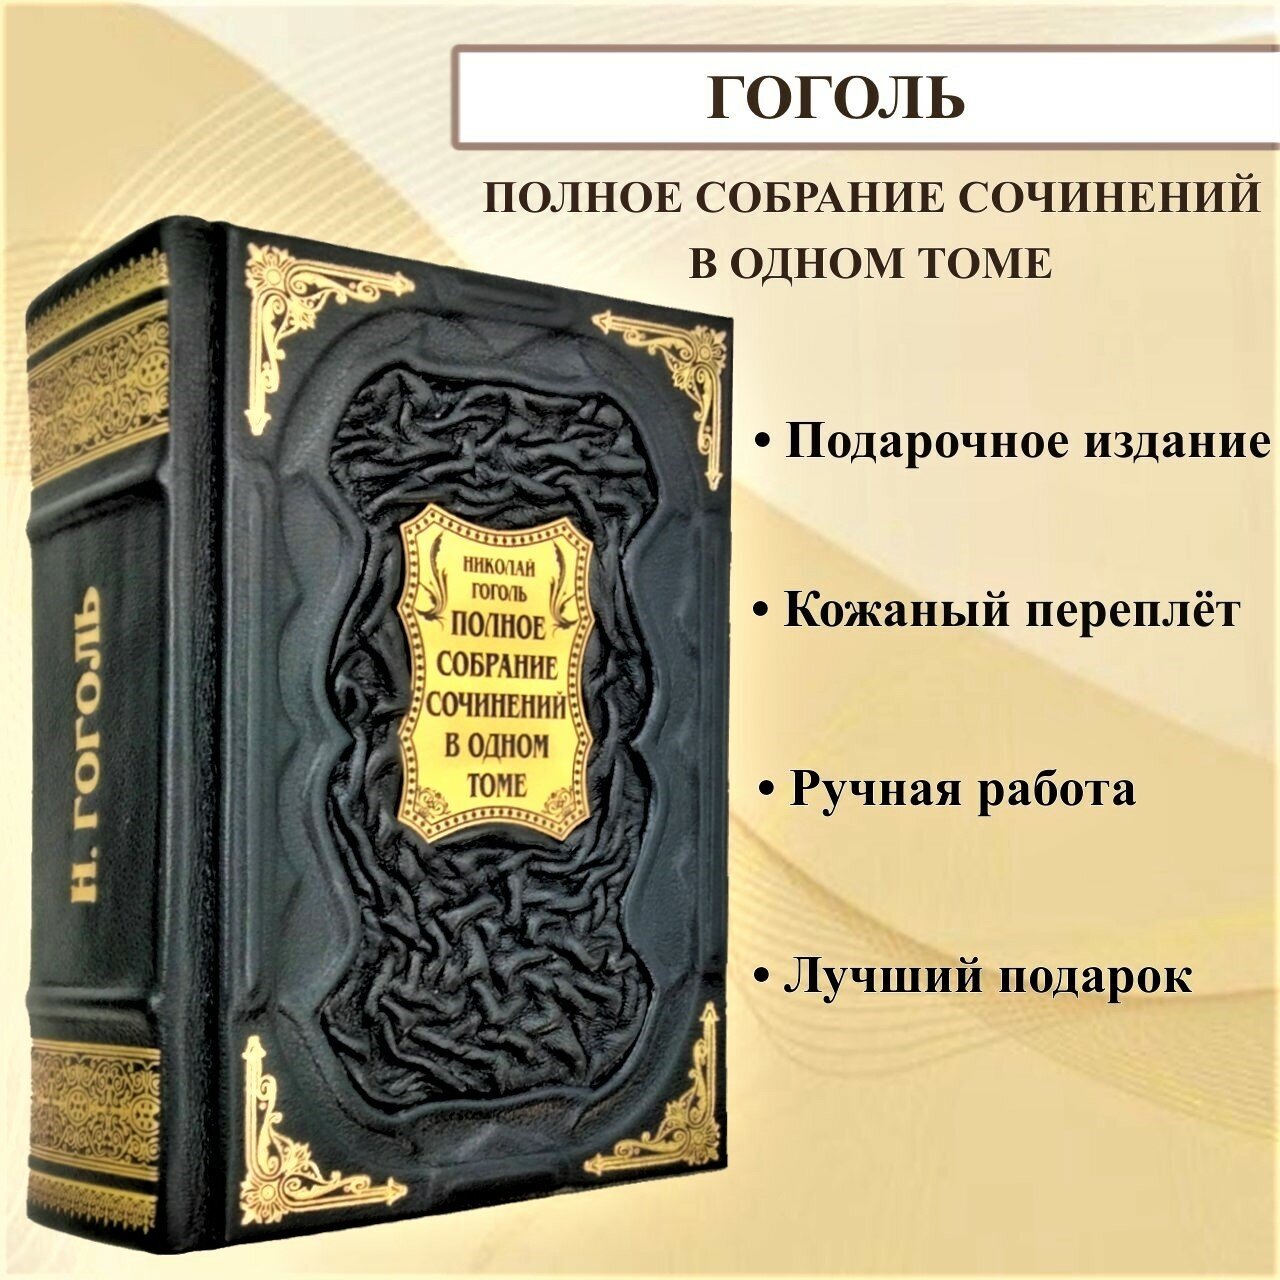 Николай Гоголь: полное собрание сочинений в одном томе. Подарочная книга в кожаном переплете.